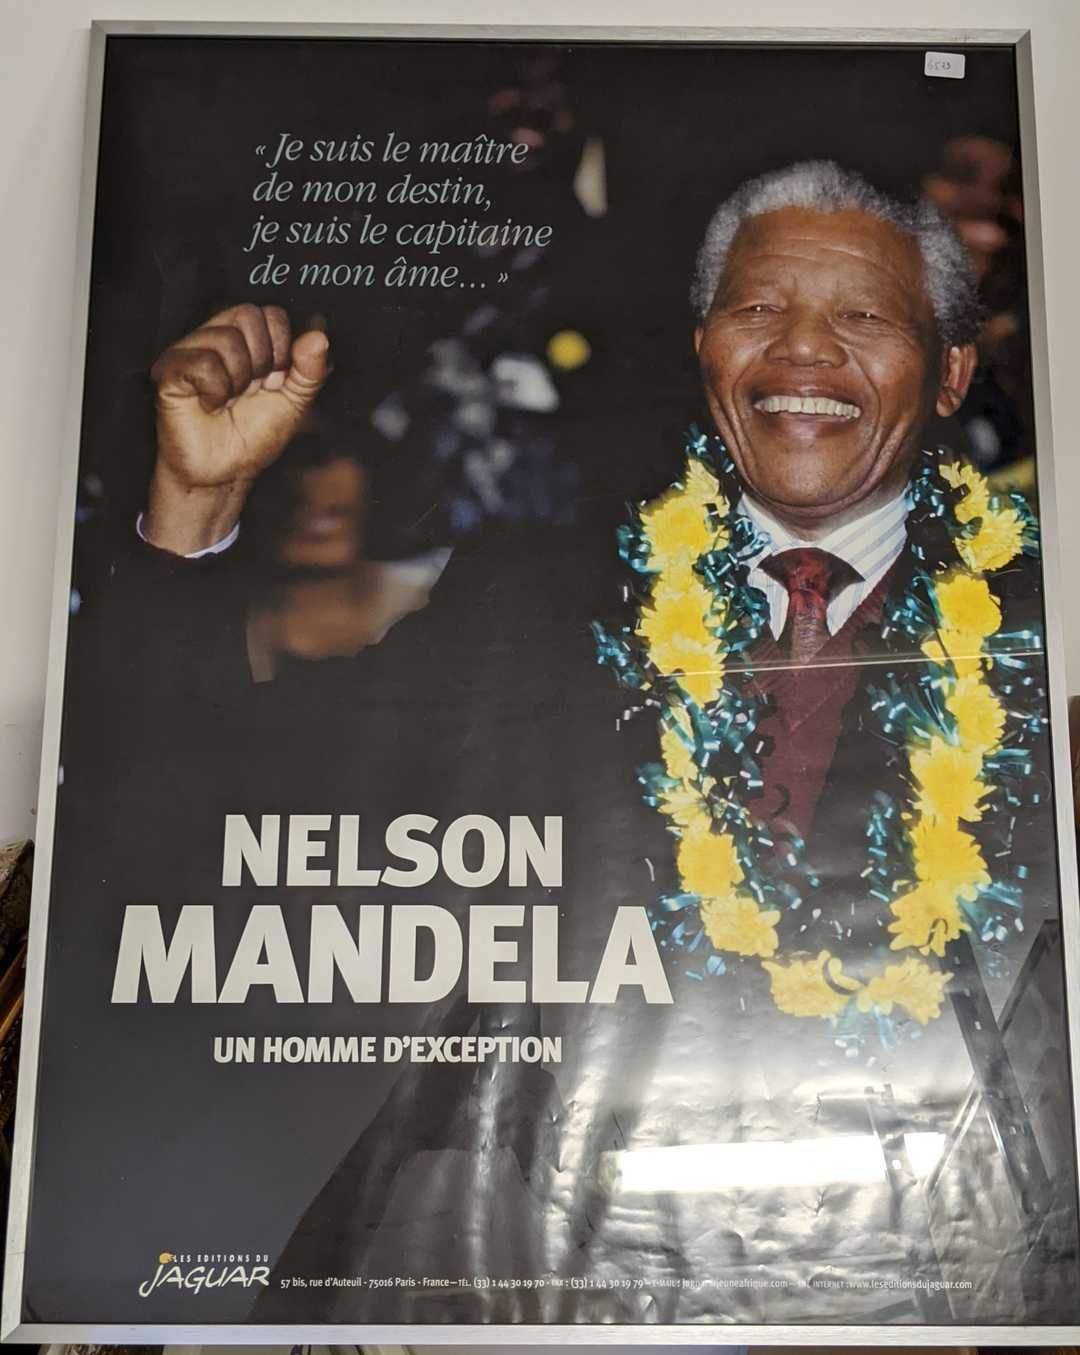 Null Poster mit der Darstellung "Nelson MANDELA ein außergewöhnlicher Mann".

79&hellip;